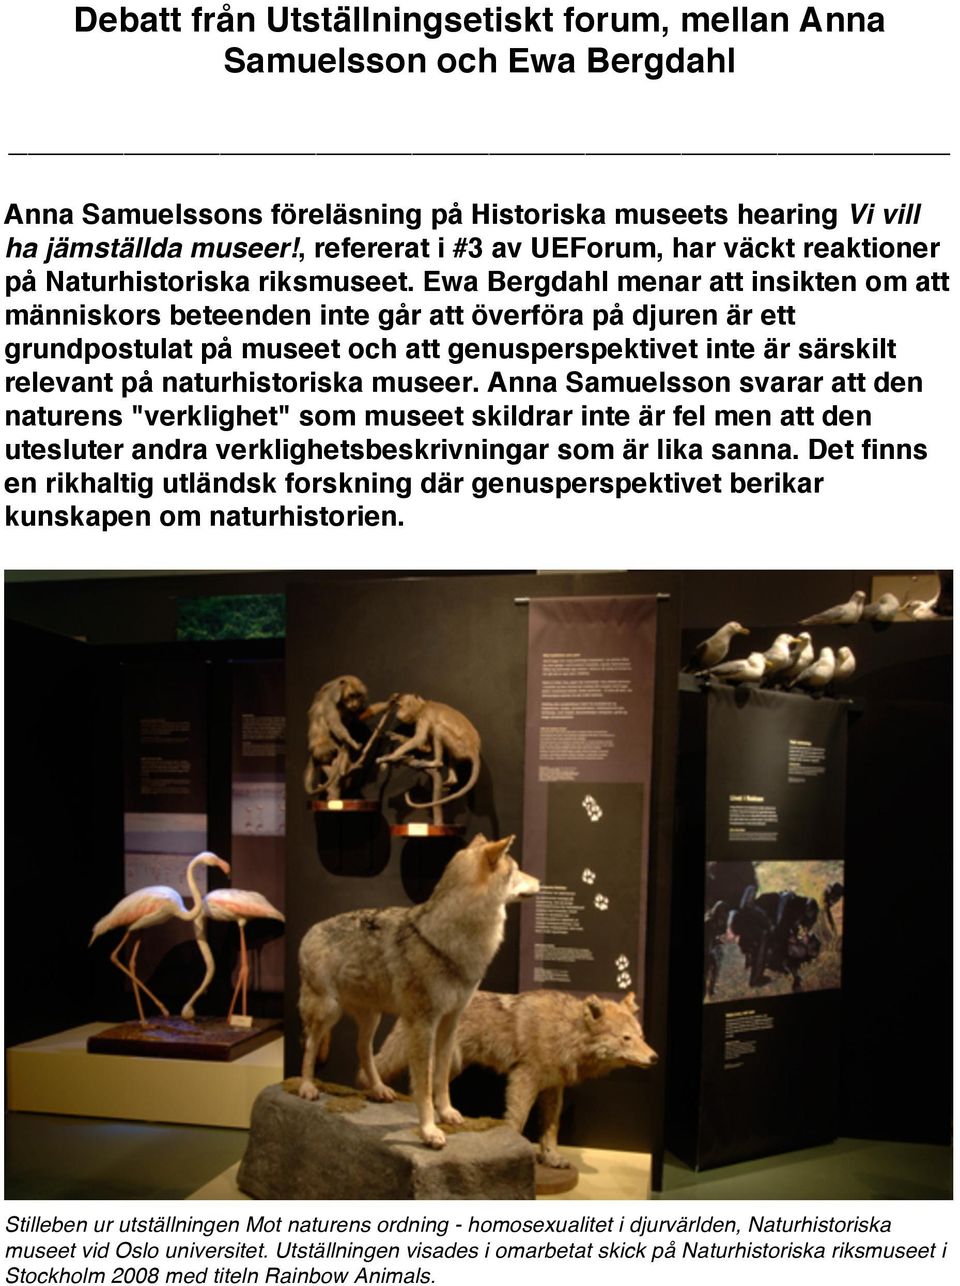 Ewa Bergdahl menar att insikten om att människors beteenden inte går att överföra på djuren är ett grundpostulat på museet och att genusperspektivet inte är särskilt relevant på naturhistoriska